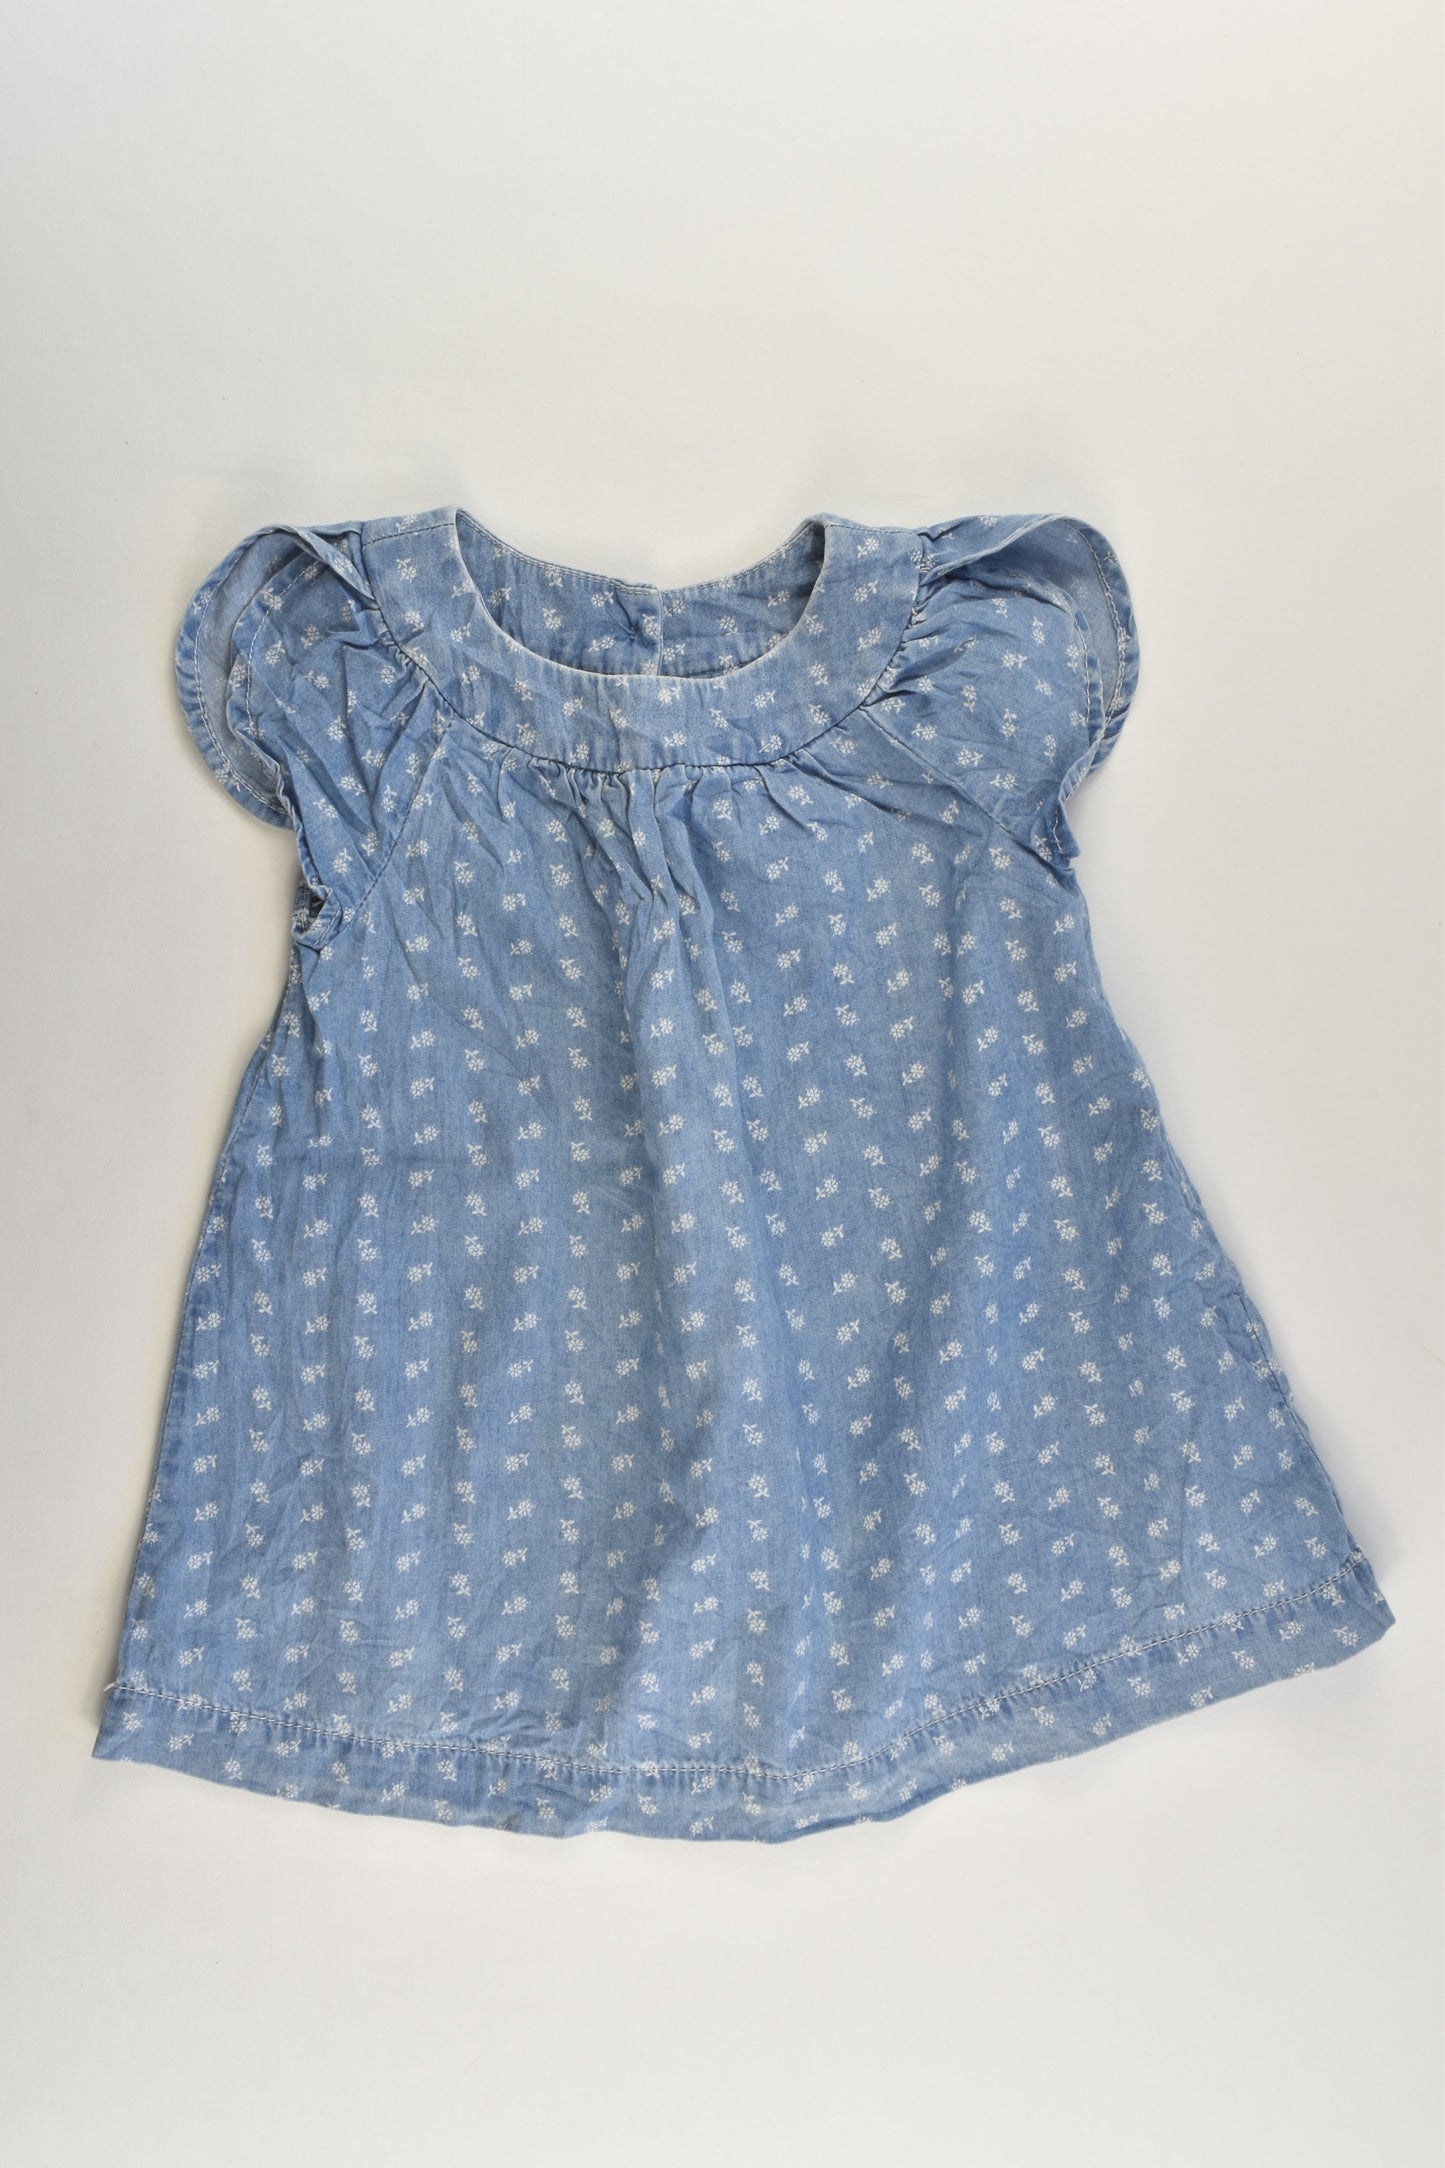 Baby Gap Size 2 (18-24 months) Lightweight Floral Denim Dress